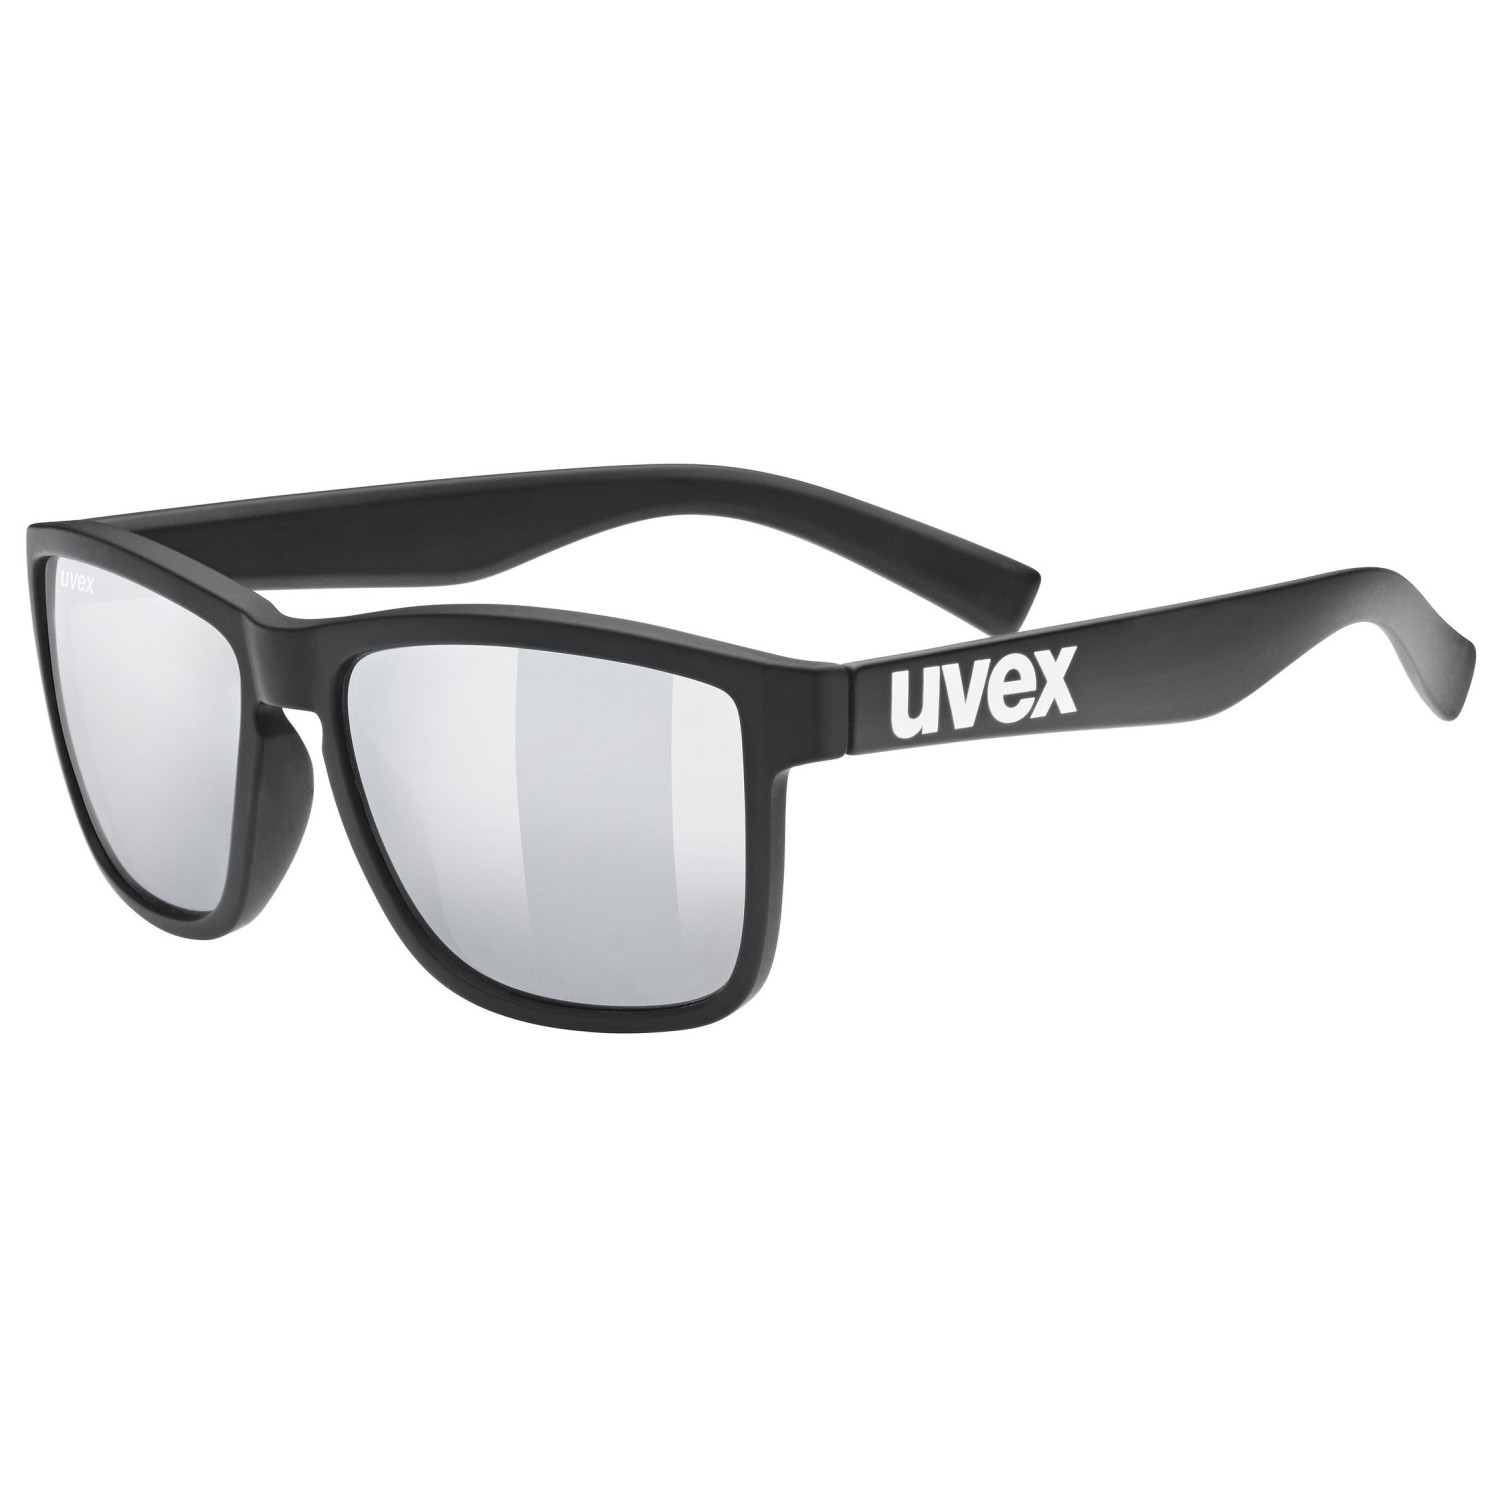 Солнцезащитные очки Uvex LGL 39 Mirror Cat 3, цвет Black Mat солнцезащитные очки uvex lgl 39 mirror cat 3 цвет grey mat blue